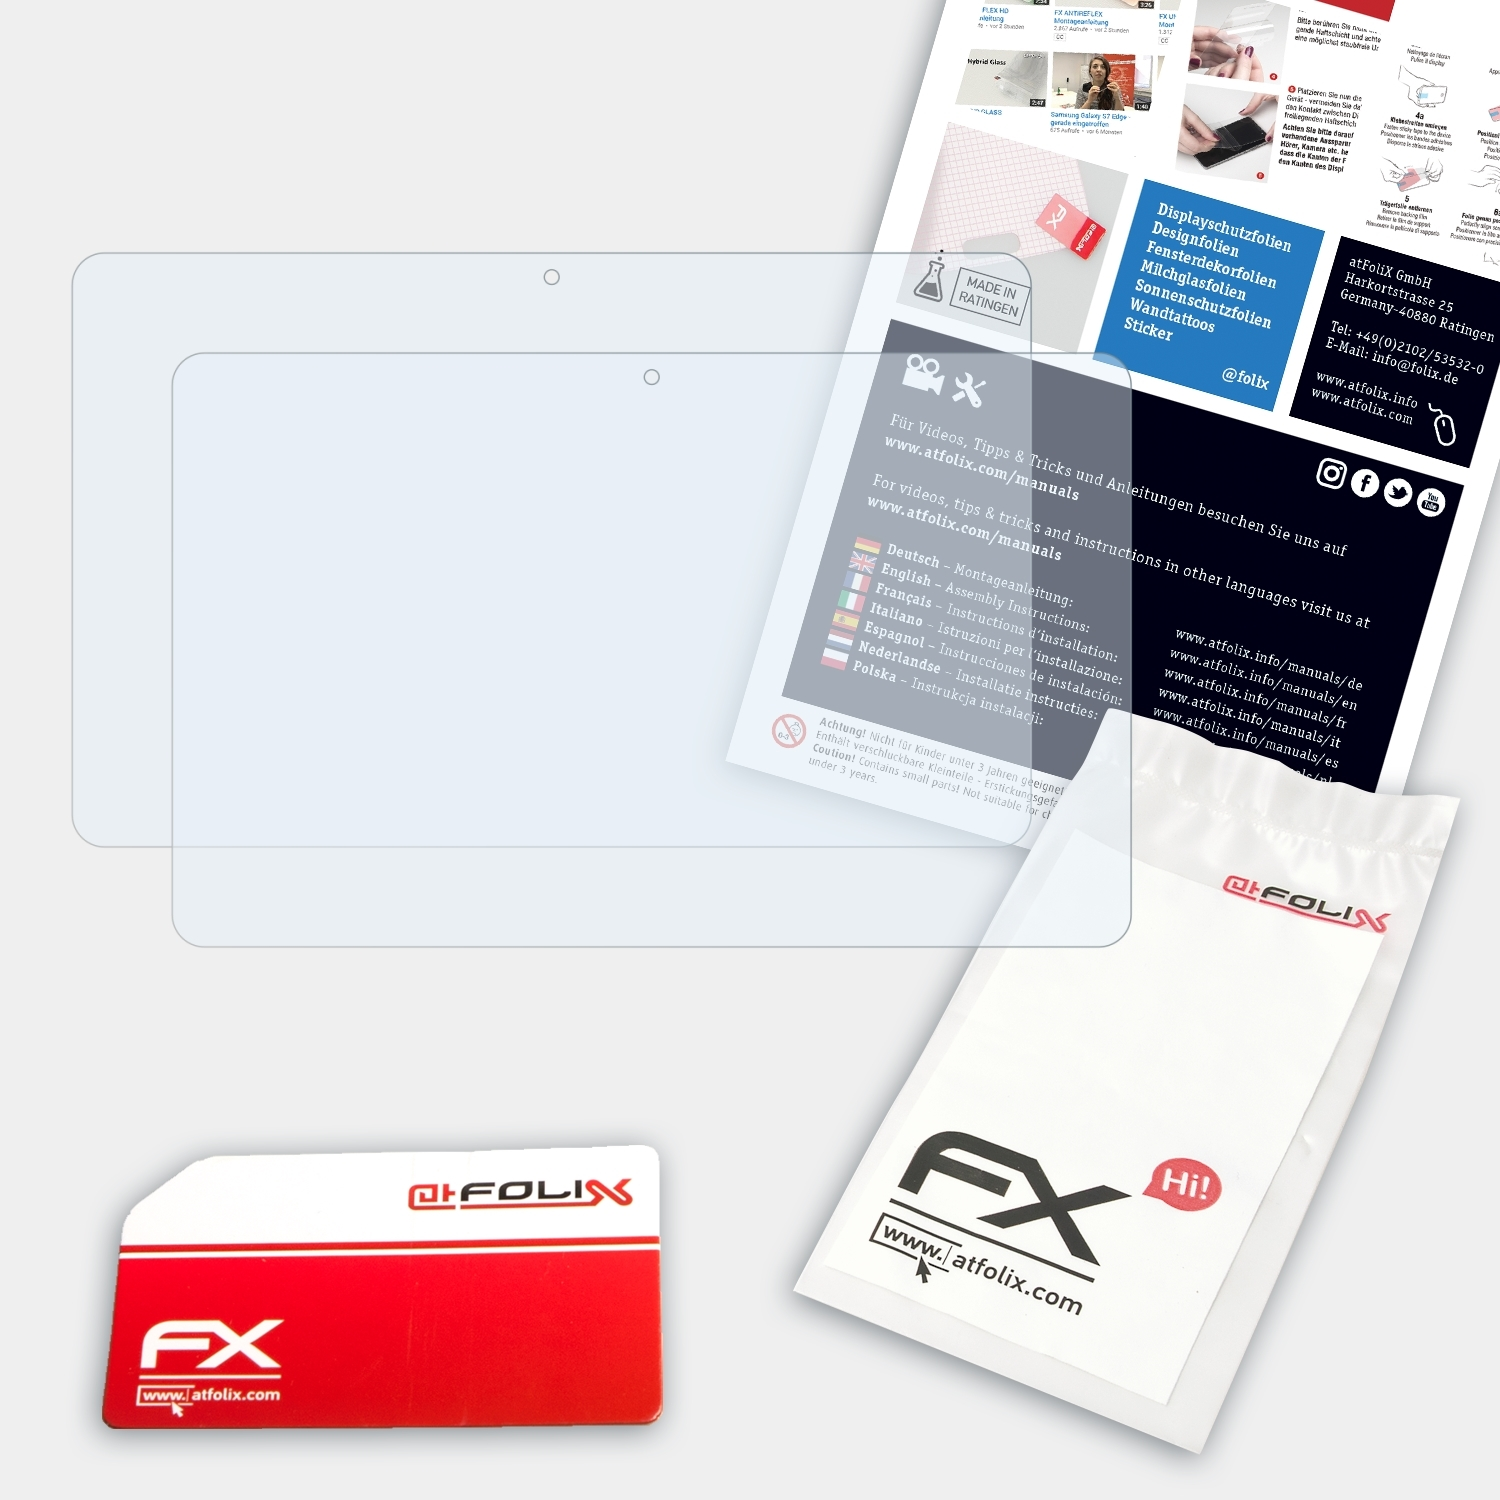 Displayschutz(für W510) 2x Iconia Acer FX-Clear ATFOLIX